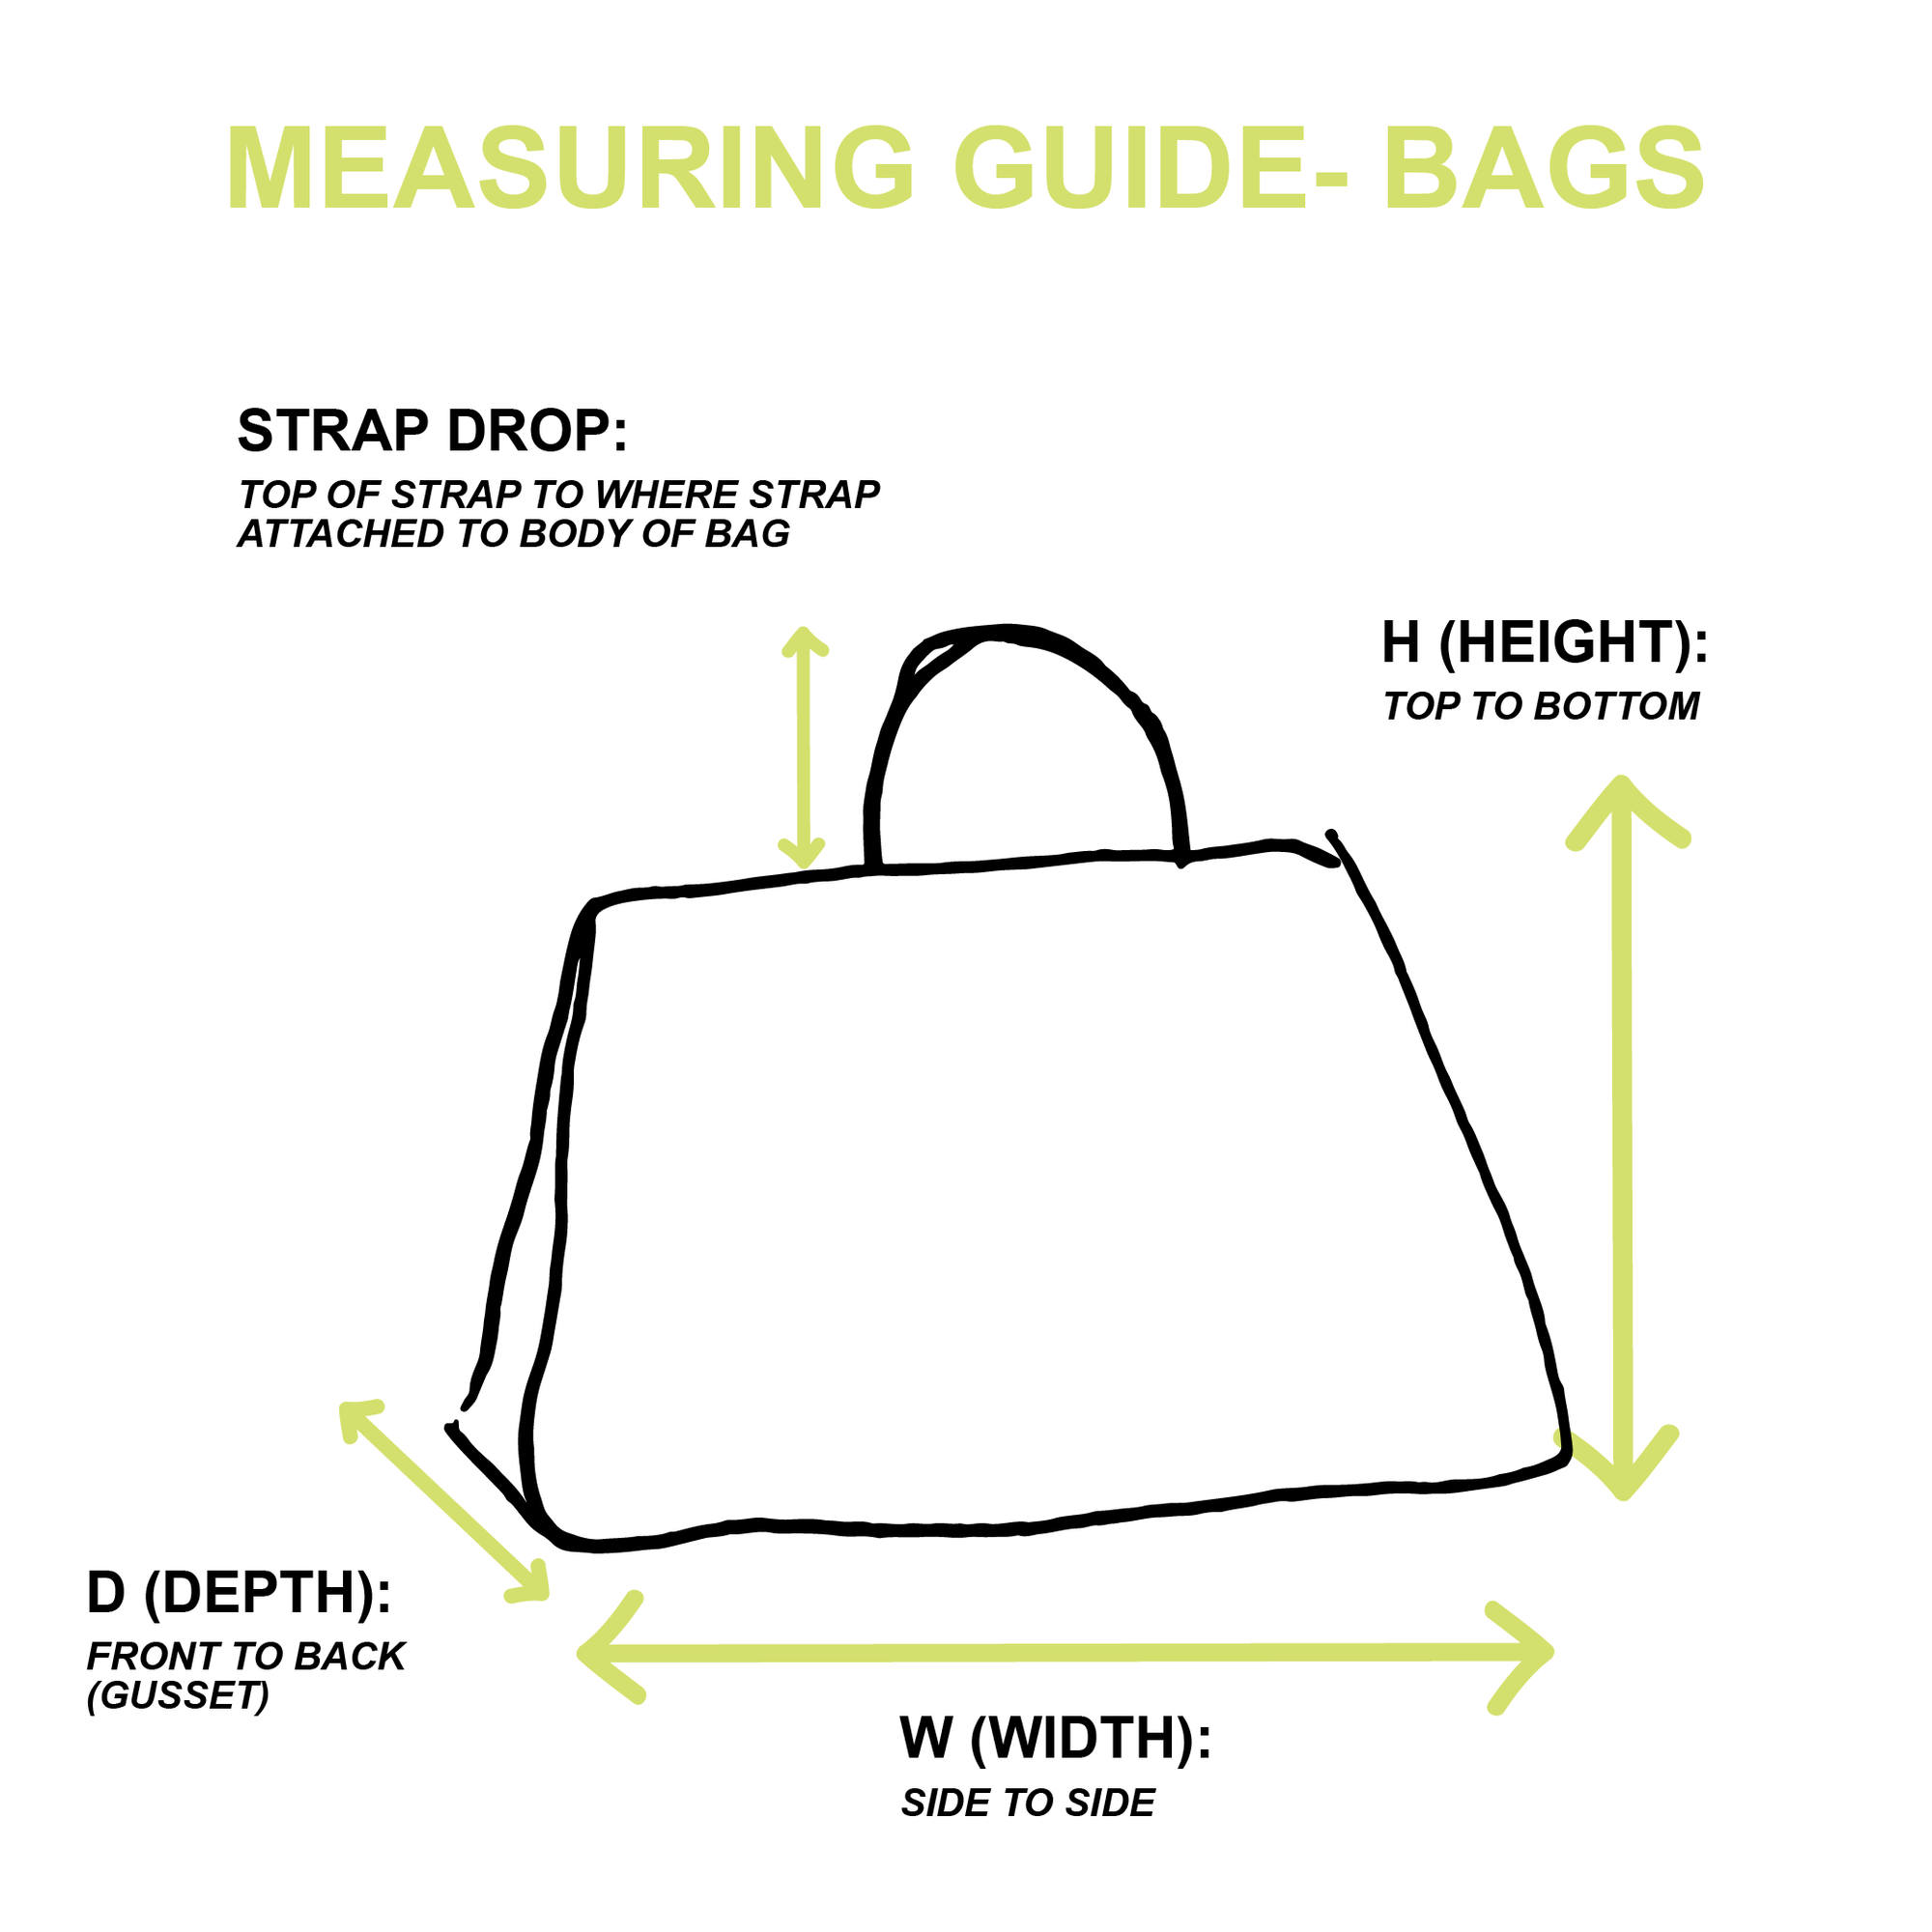 Gucci Black Structured Shoulder Bag - Handbags